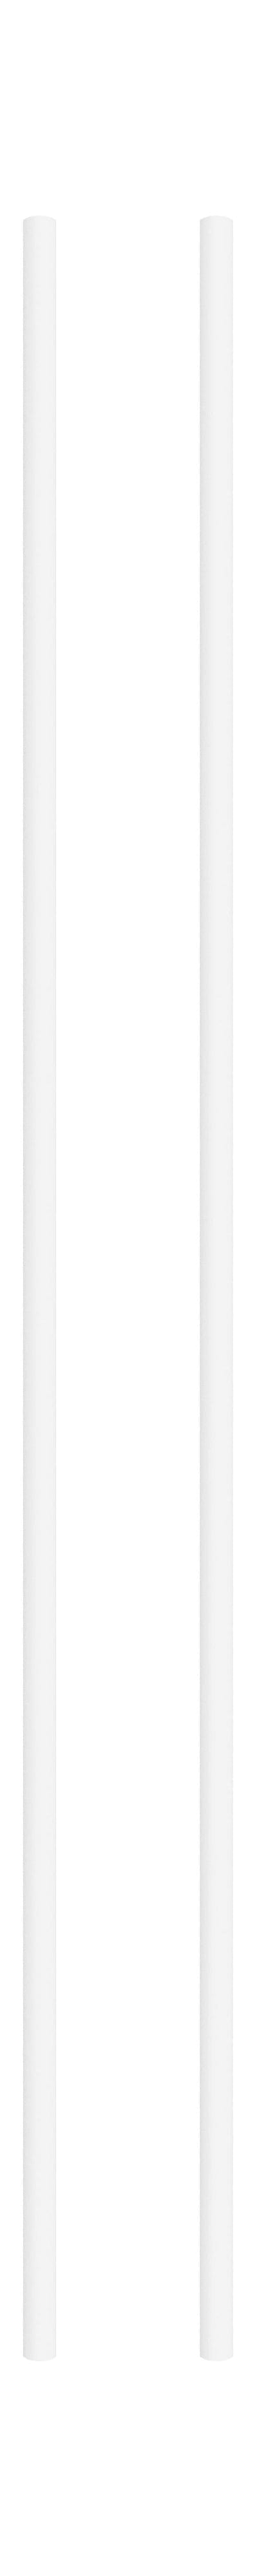 Moebe Spling -systeem/muurrekken been 115 cm wit, set van 2